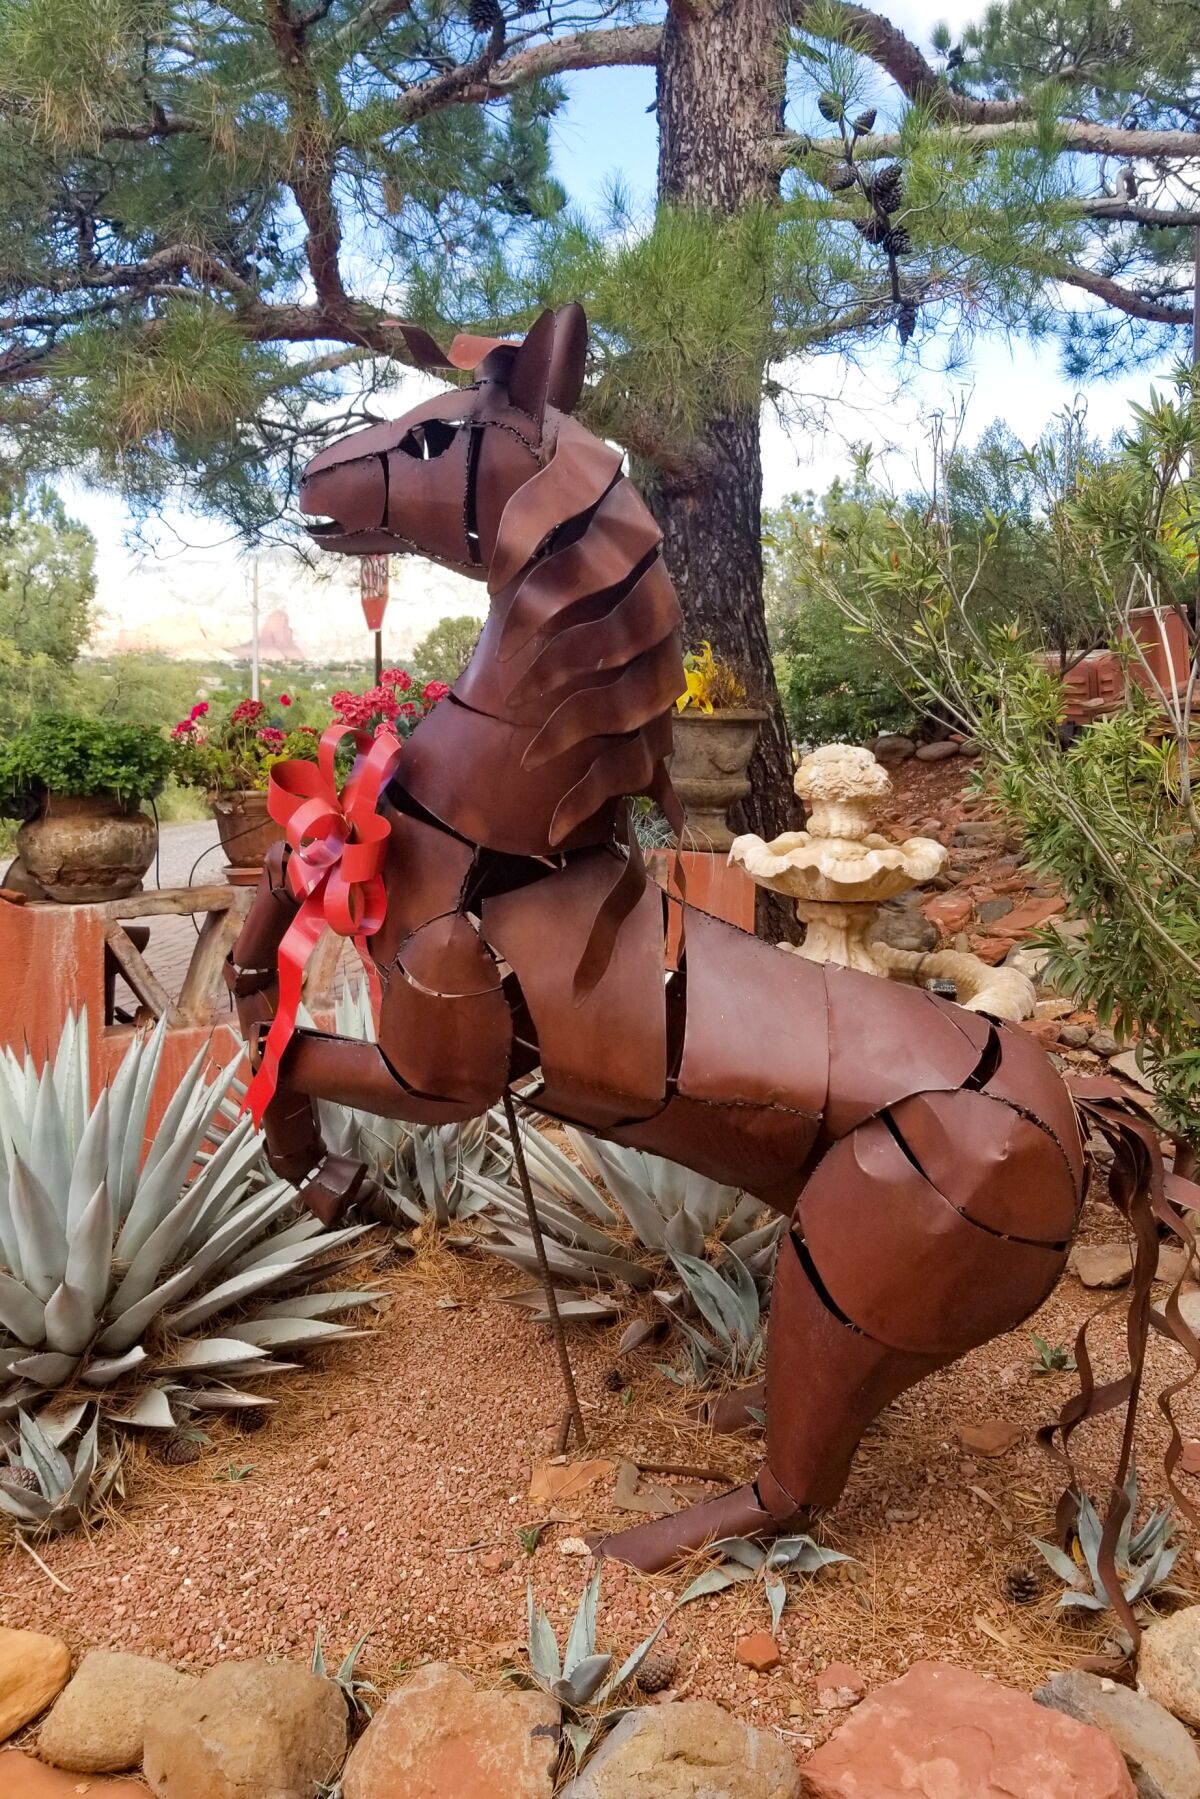 A metal sculpture of a rearing horse in a desert garden